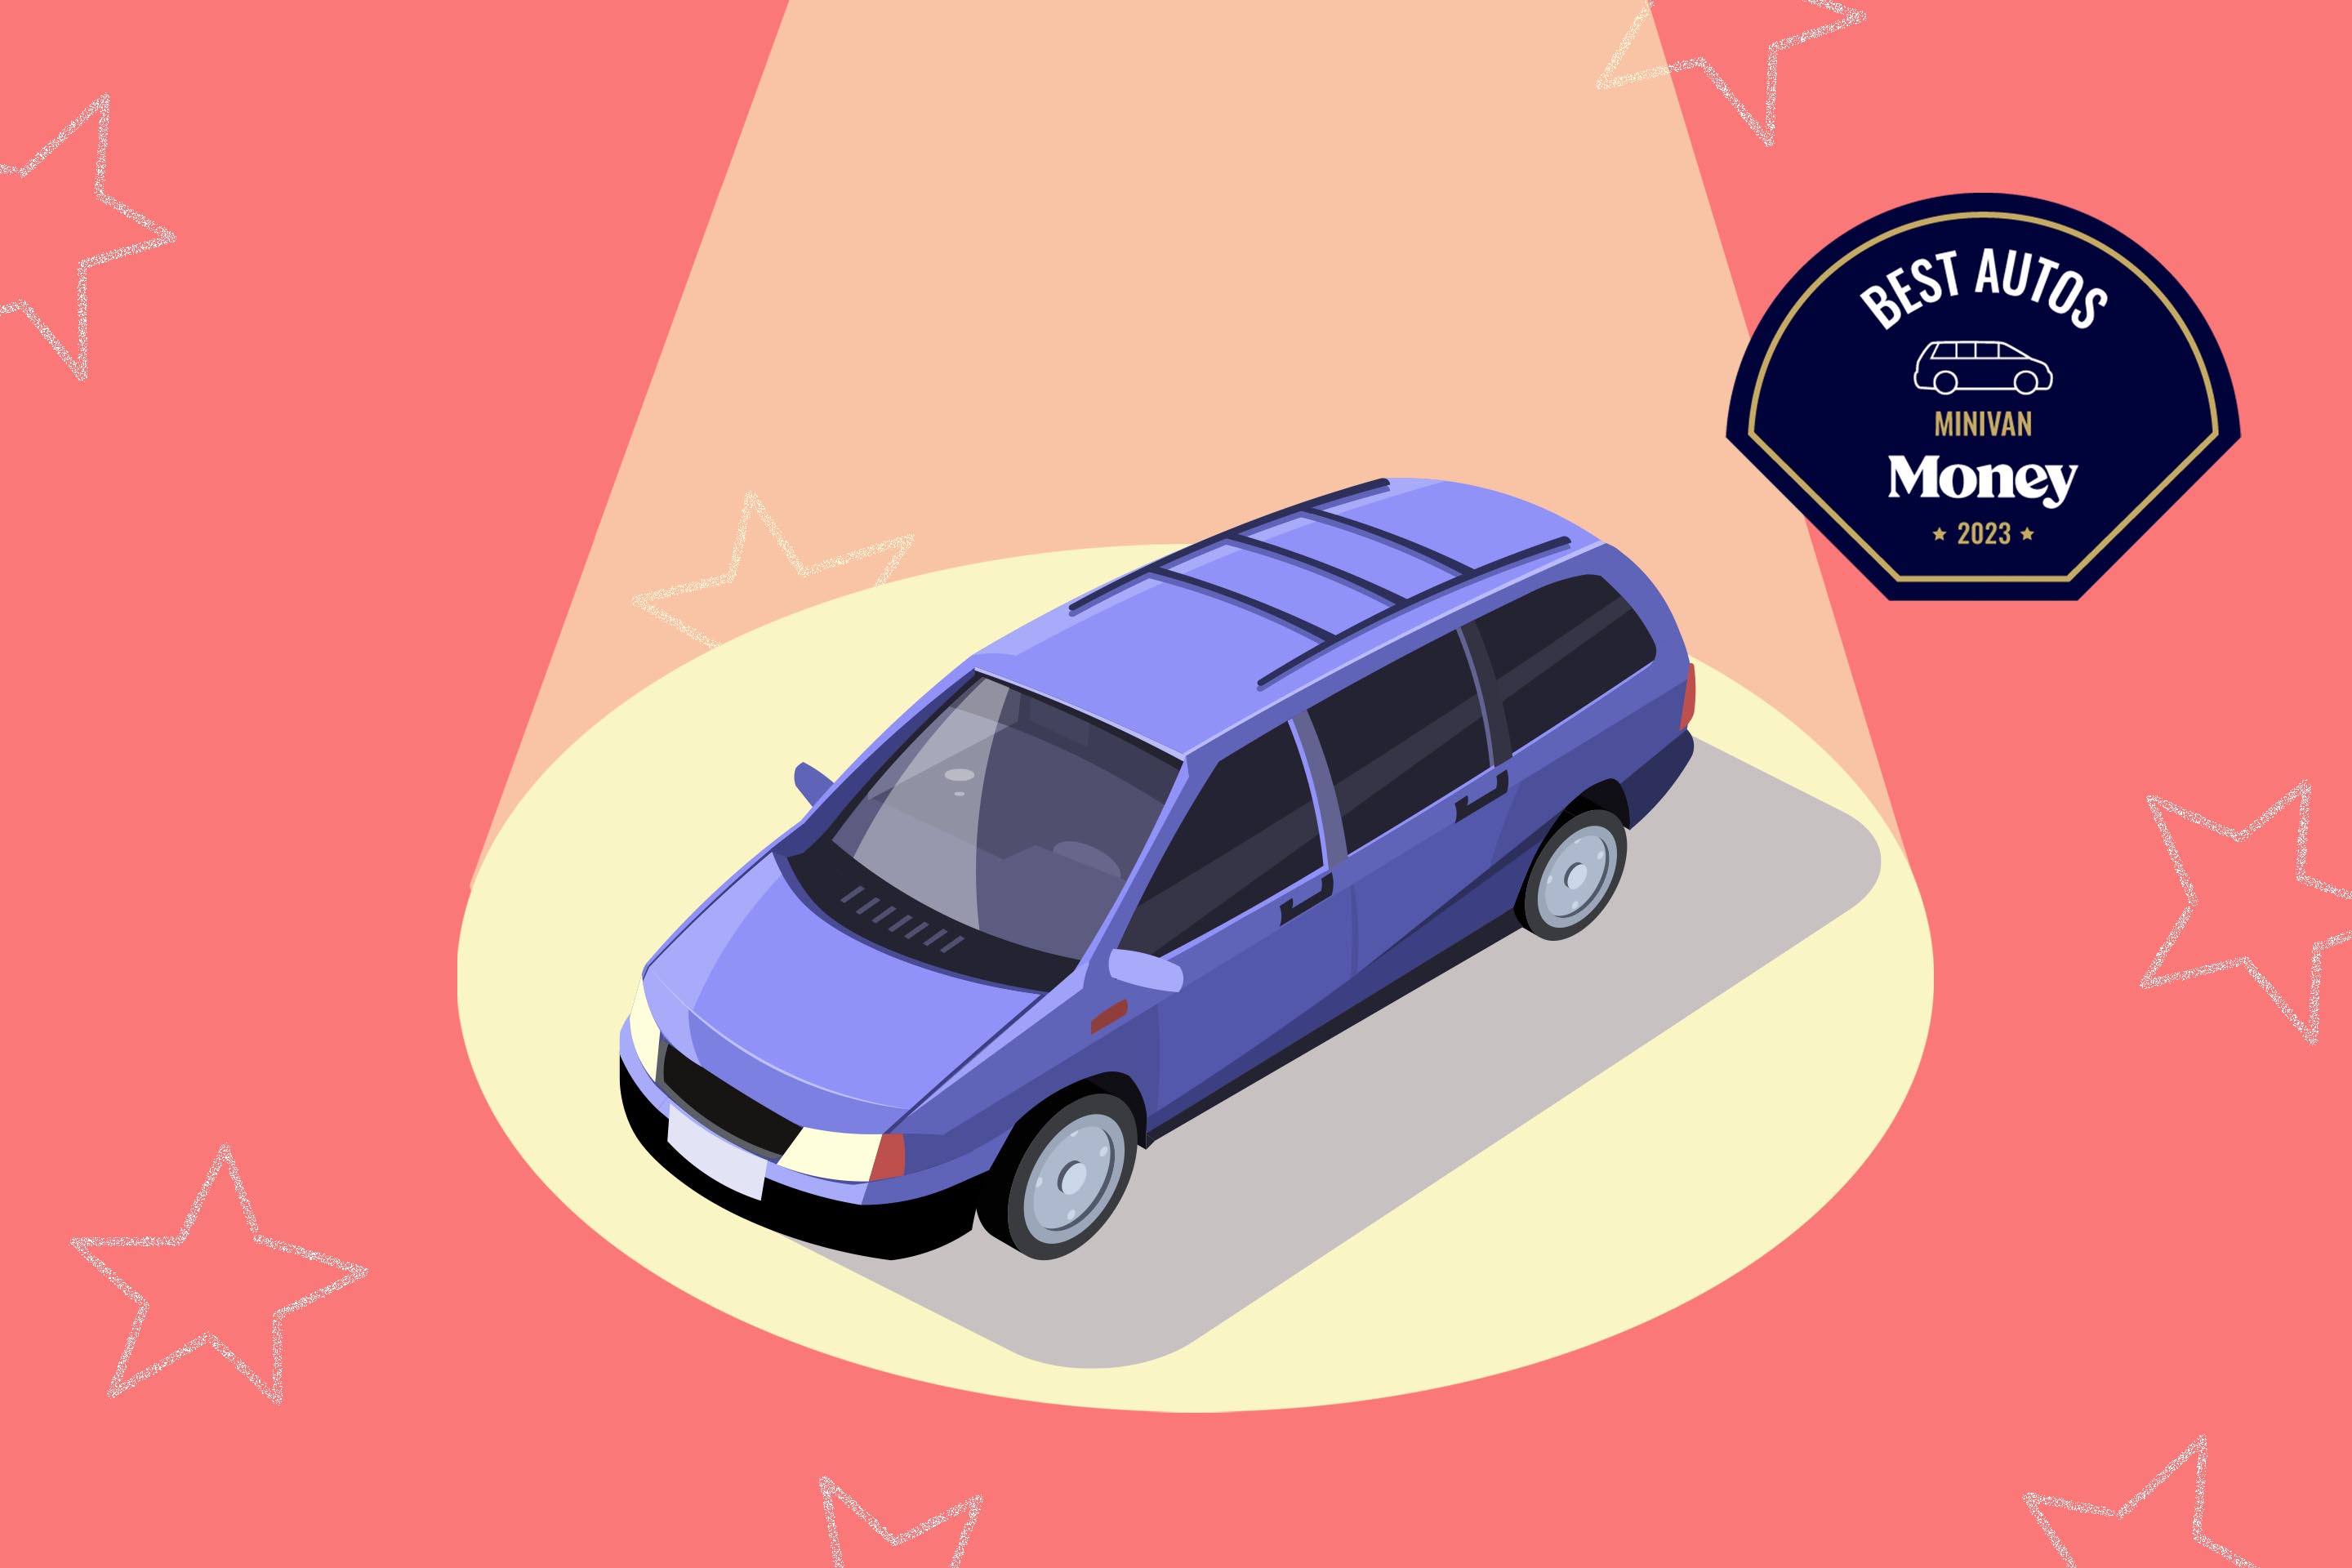 The Best Minivans for 2023